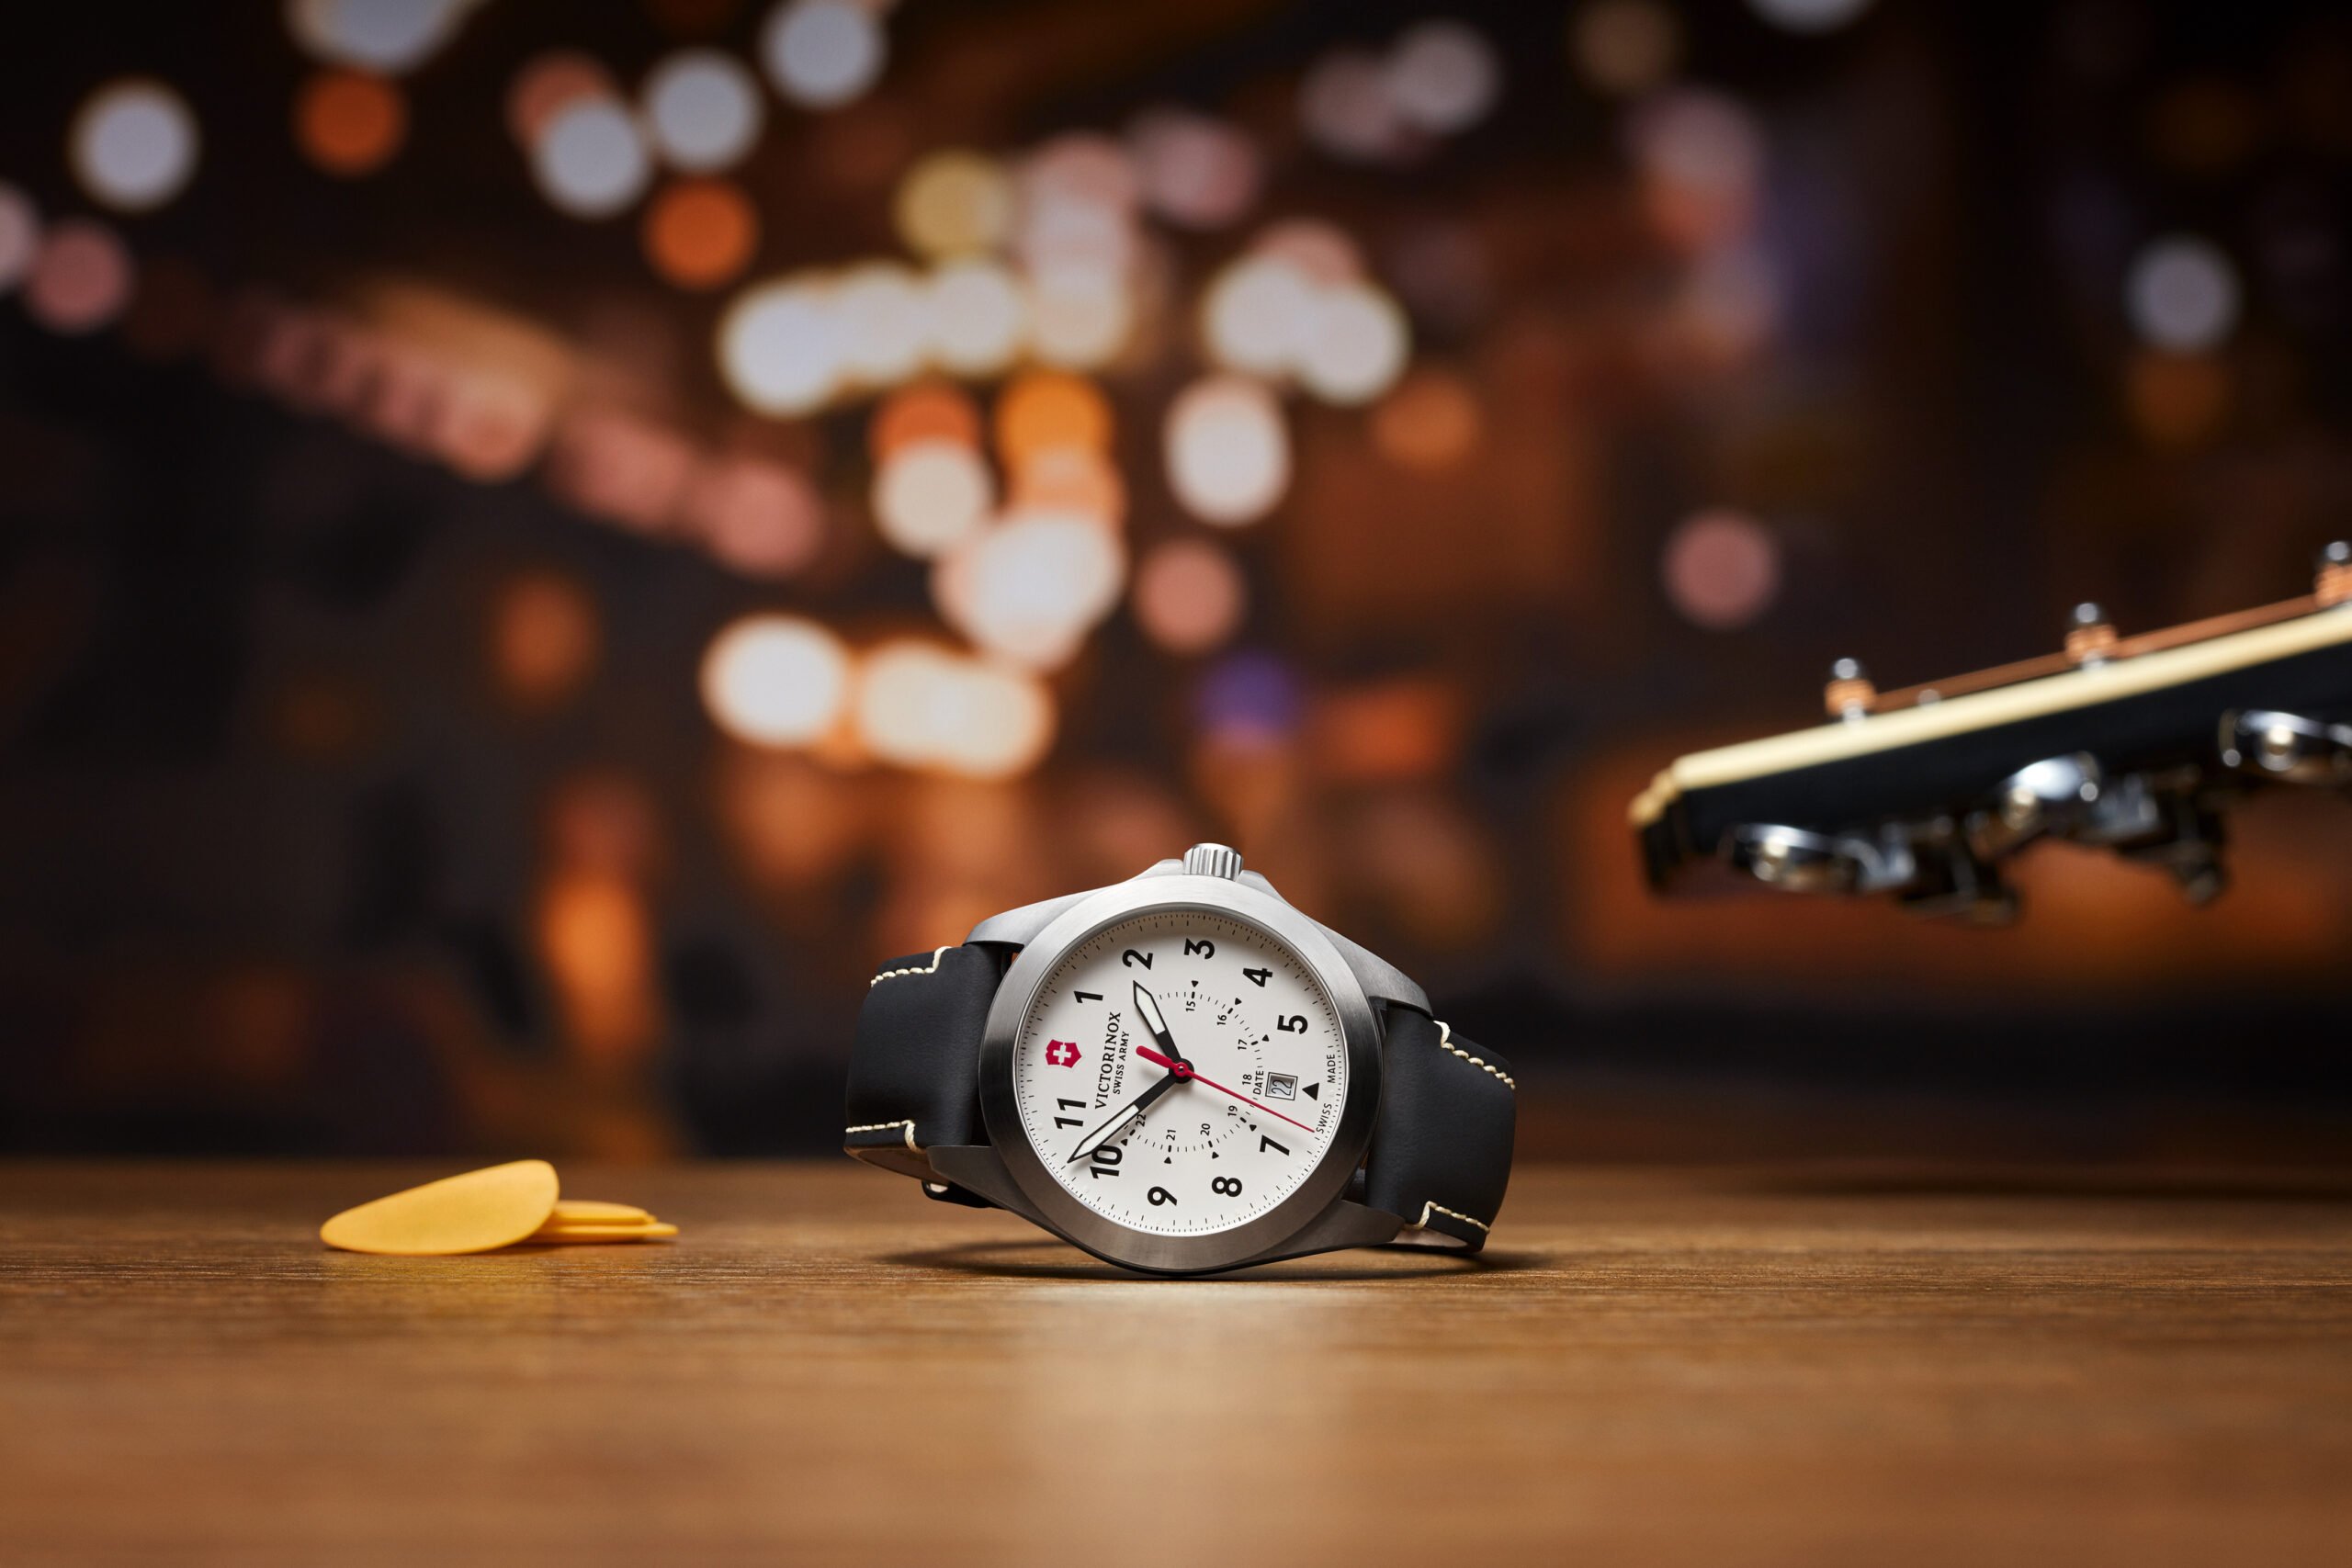 Наручные часы из 90-х: описание, модели, фото, цены - купить наручные часы из 90-х в интернет-магазине